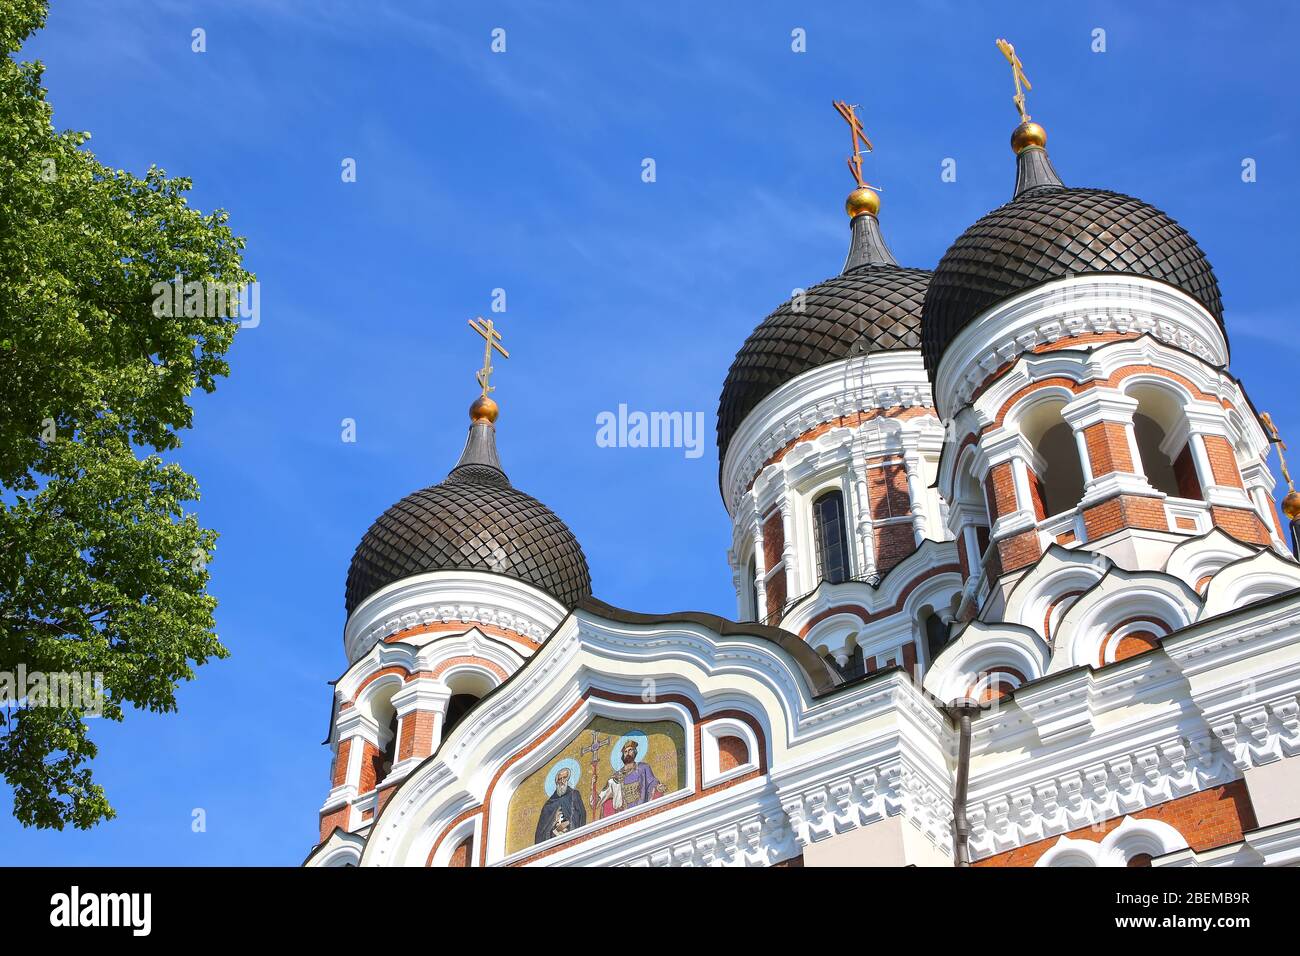 Die Alexander-Newski-Kathedrale ist eine orthodoxe Kathedrale in der Altstadt von Tallinn, Estland. Es wurde nach einem Entwurf von Michail Preobraschenski in einem Typi gebaut Stockfoto